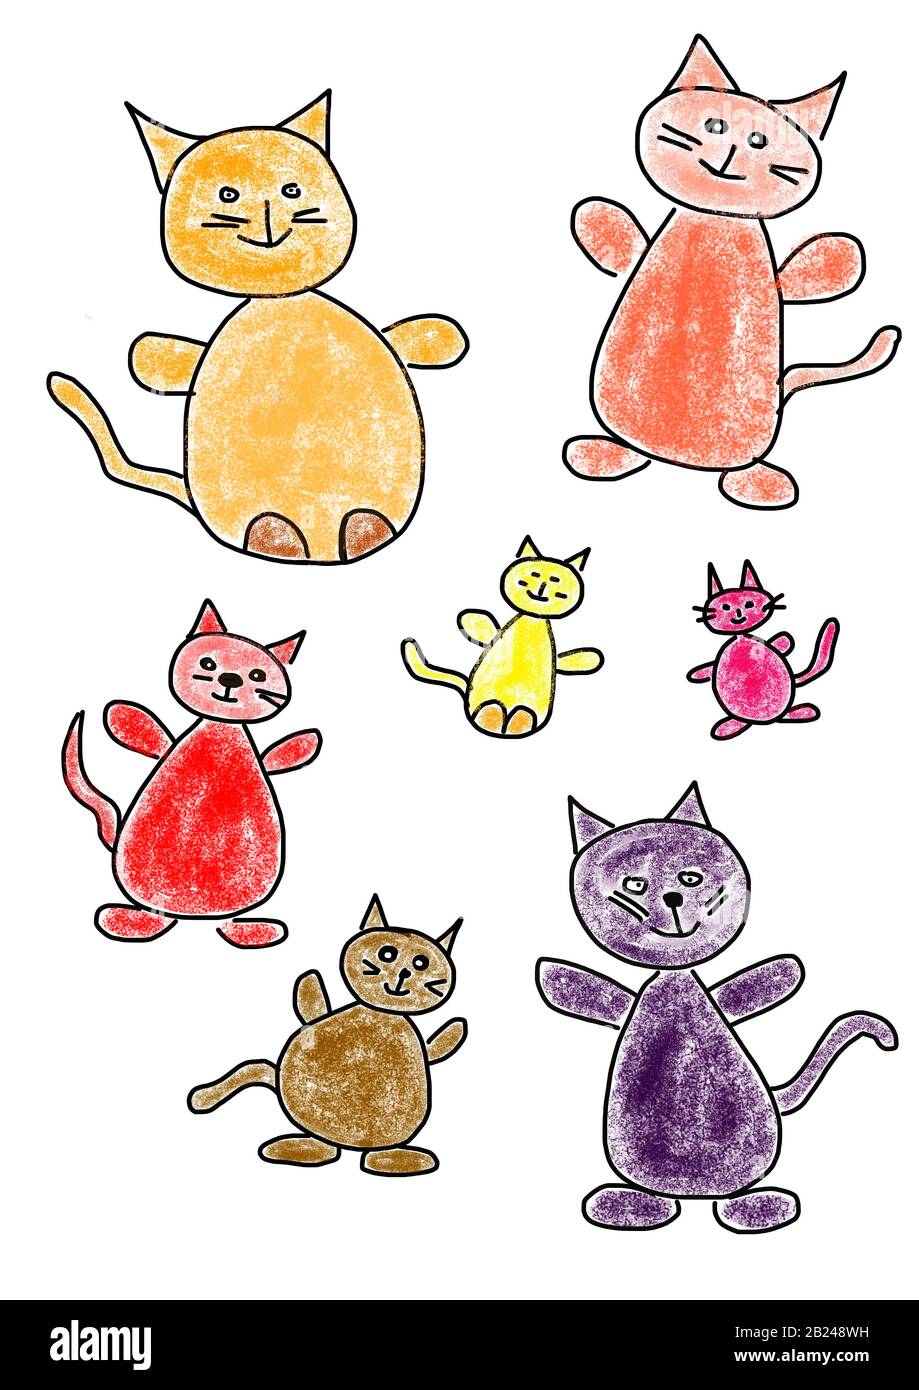 Disegno di gatti immagini e fotografie stock ad alta risoluzione - Alamy